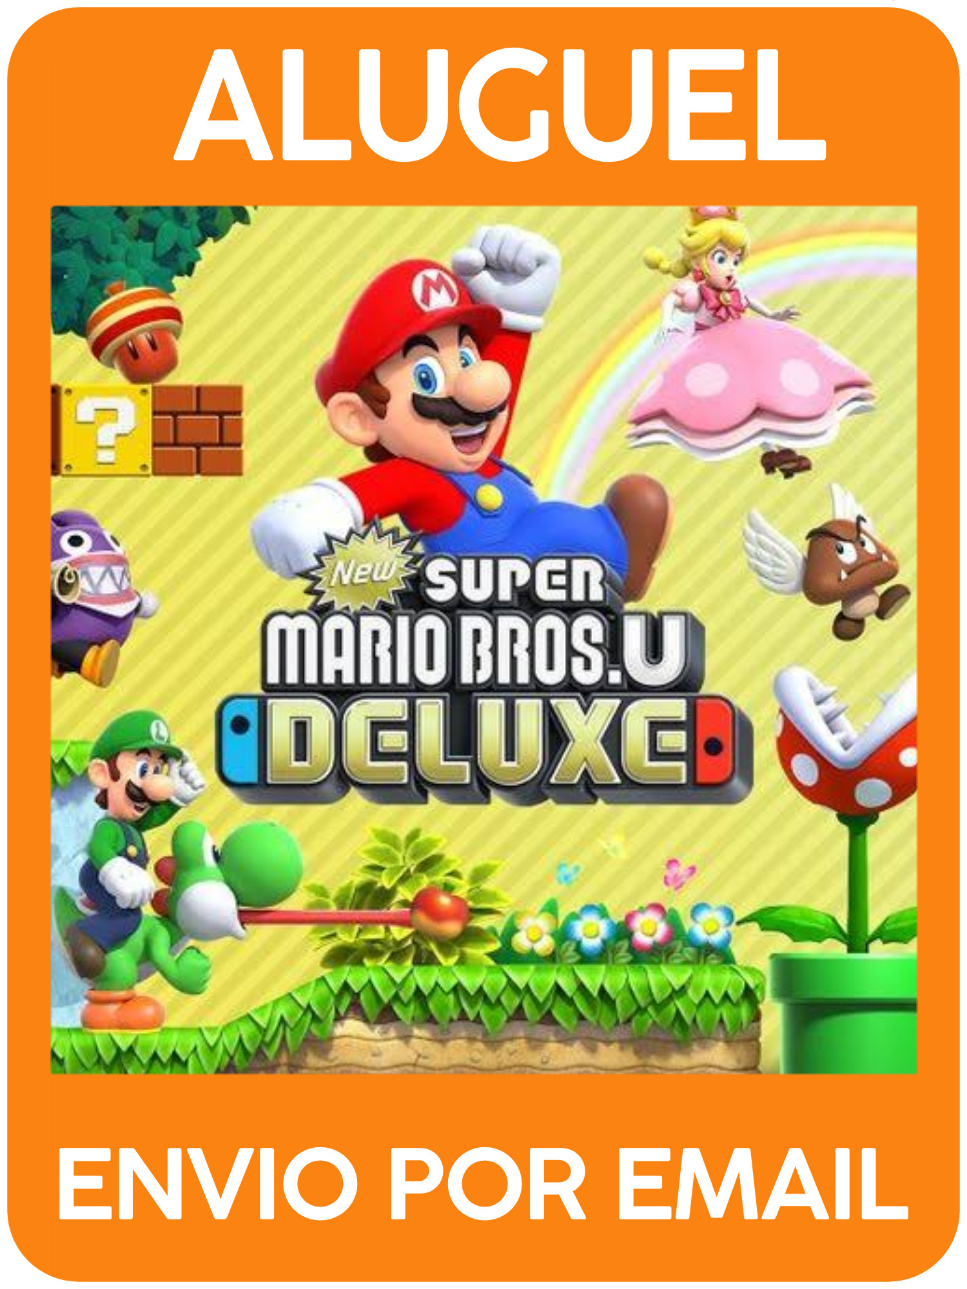 Super Mario Bross  Clubinho de Ofertas